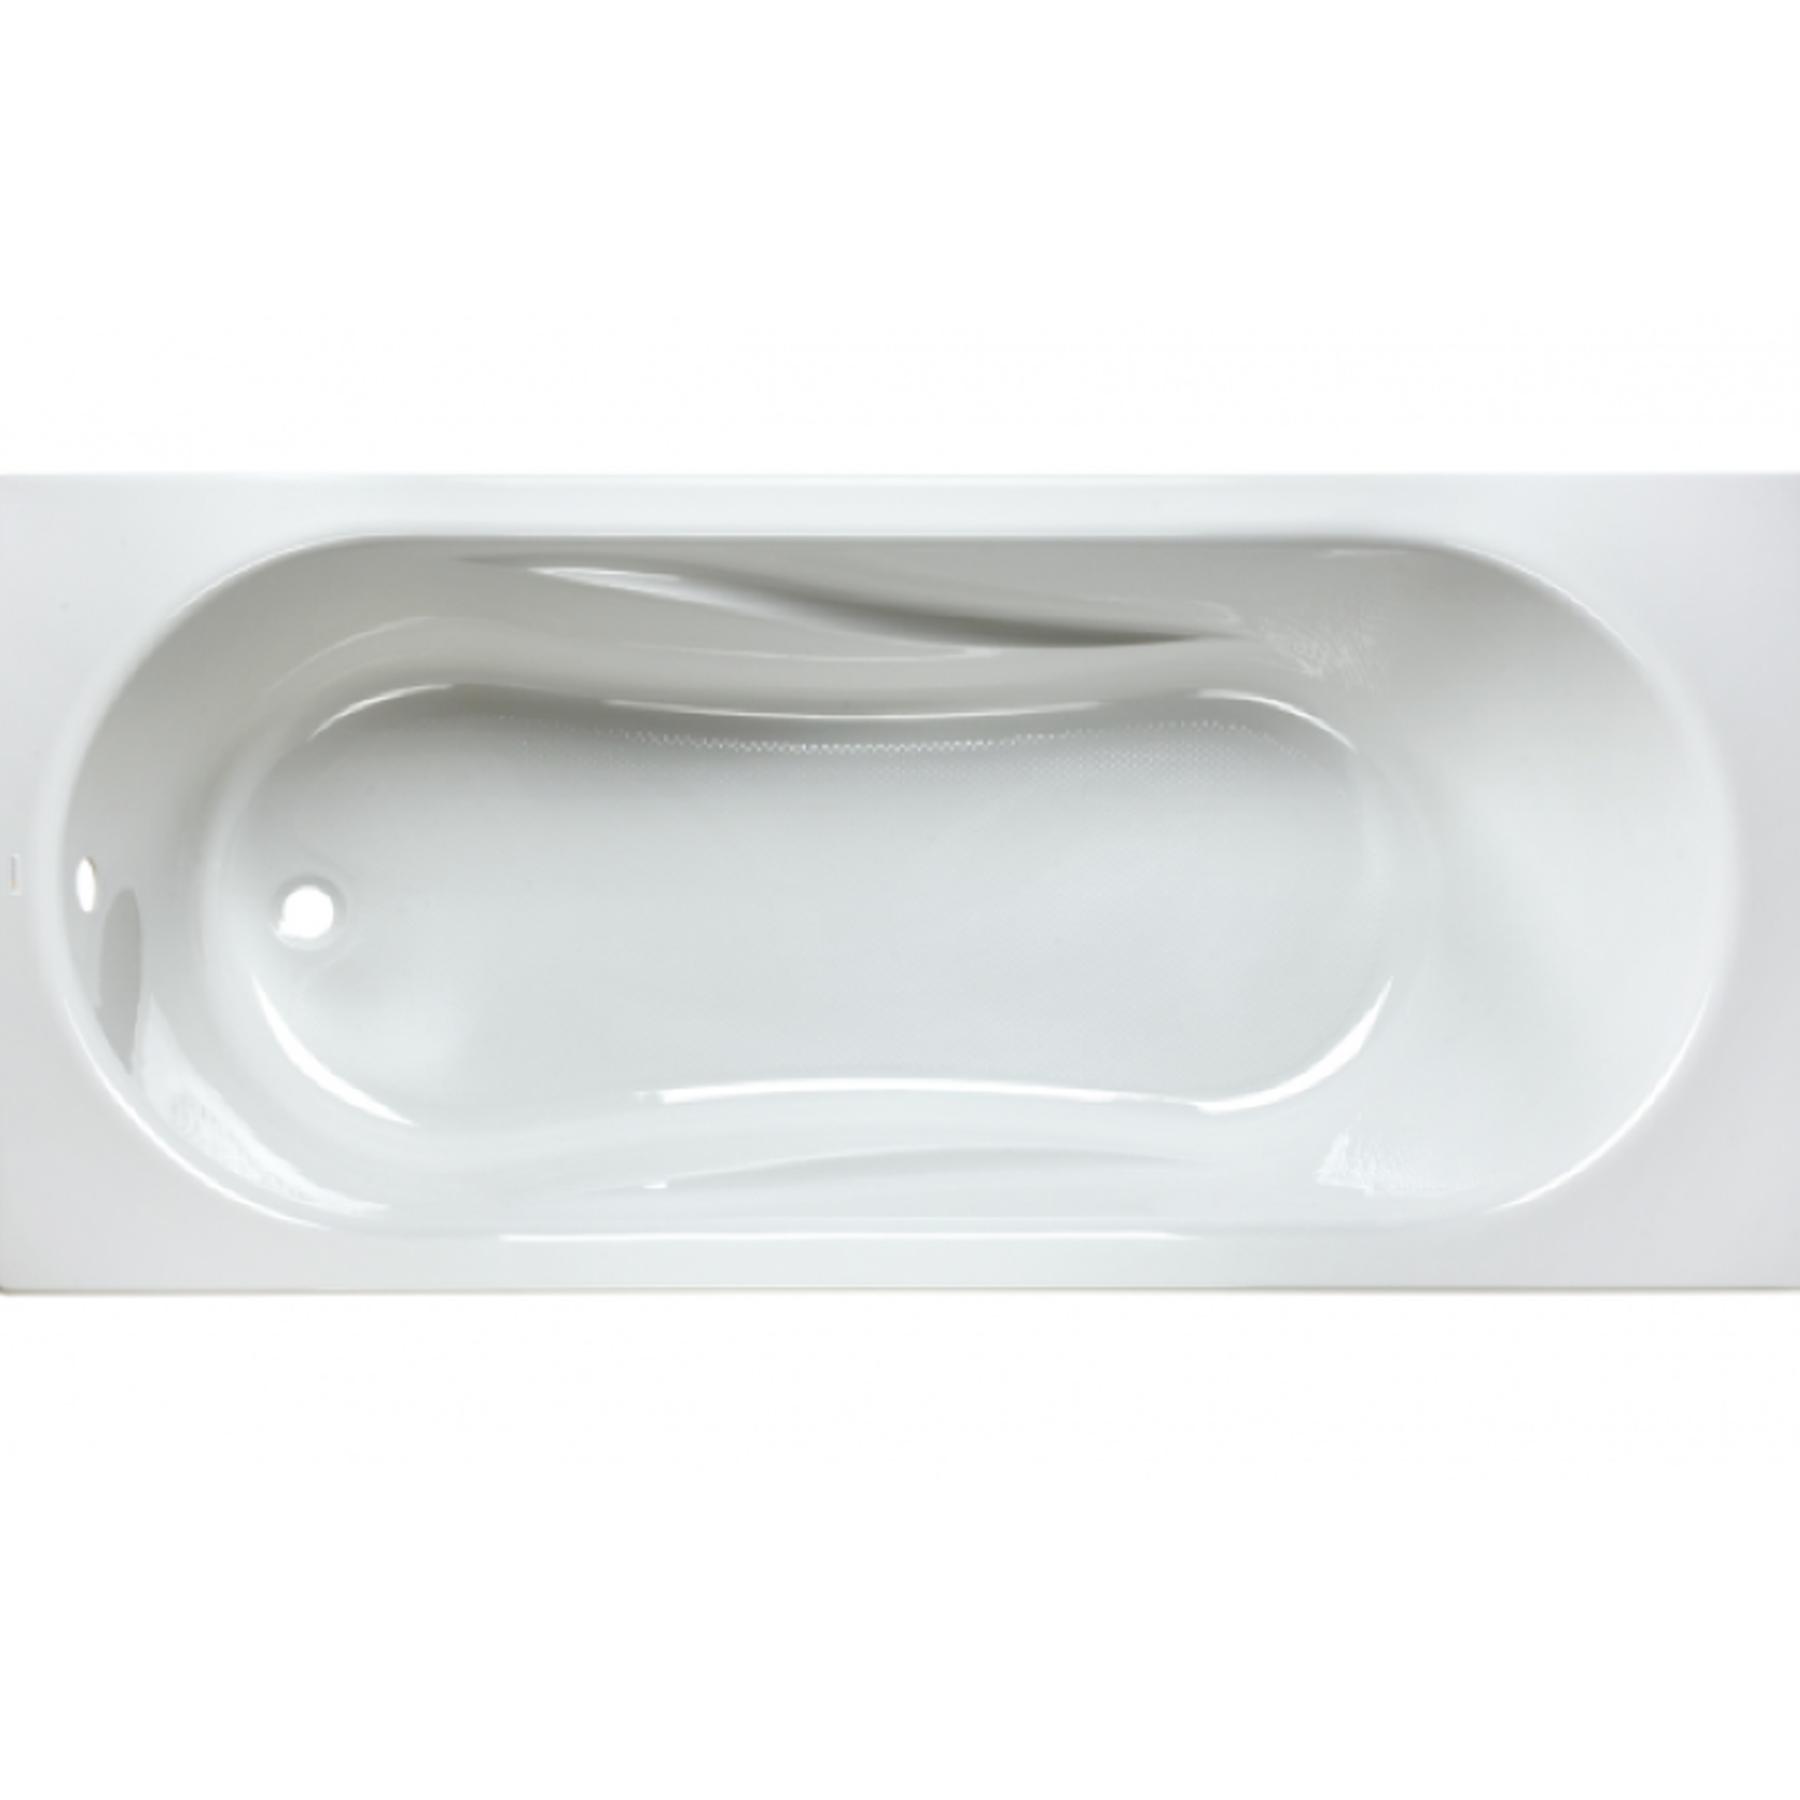 Baignoire acrylique Haute Densité Gamme PRO SANINDUSA Aveiro 160x70 couleur blanche livrée avec pieds réglables (vidage non inclus)    